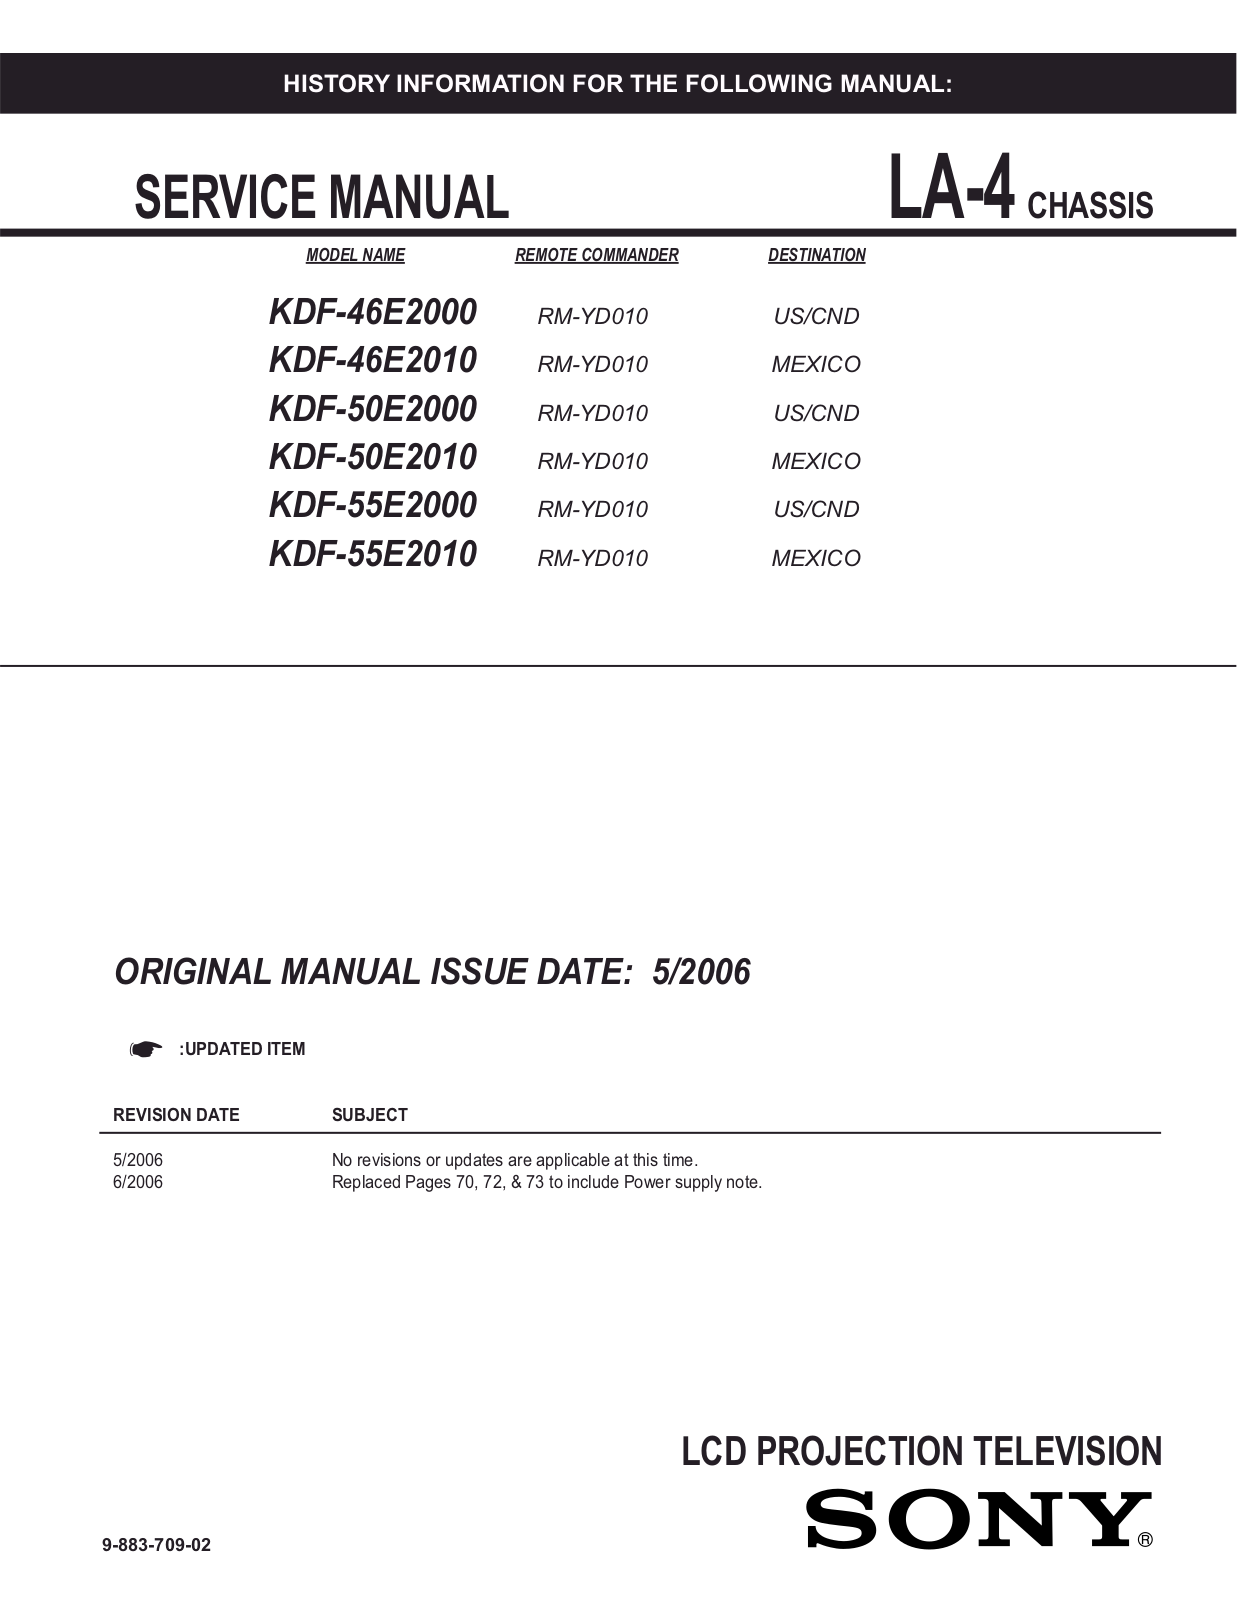 Sony KDF-50E2000, KDF-50E2010, KDF-55E2000, KDF-55E2010, KDF-46E2010 Service Manual